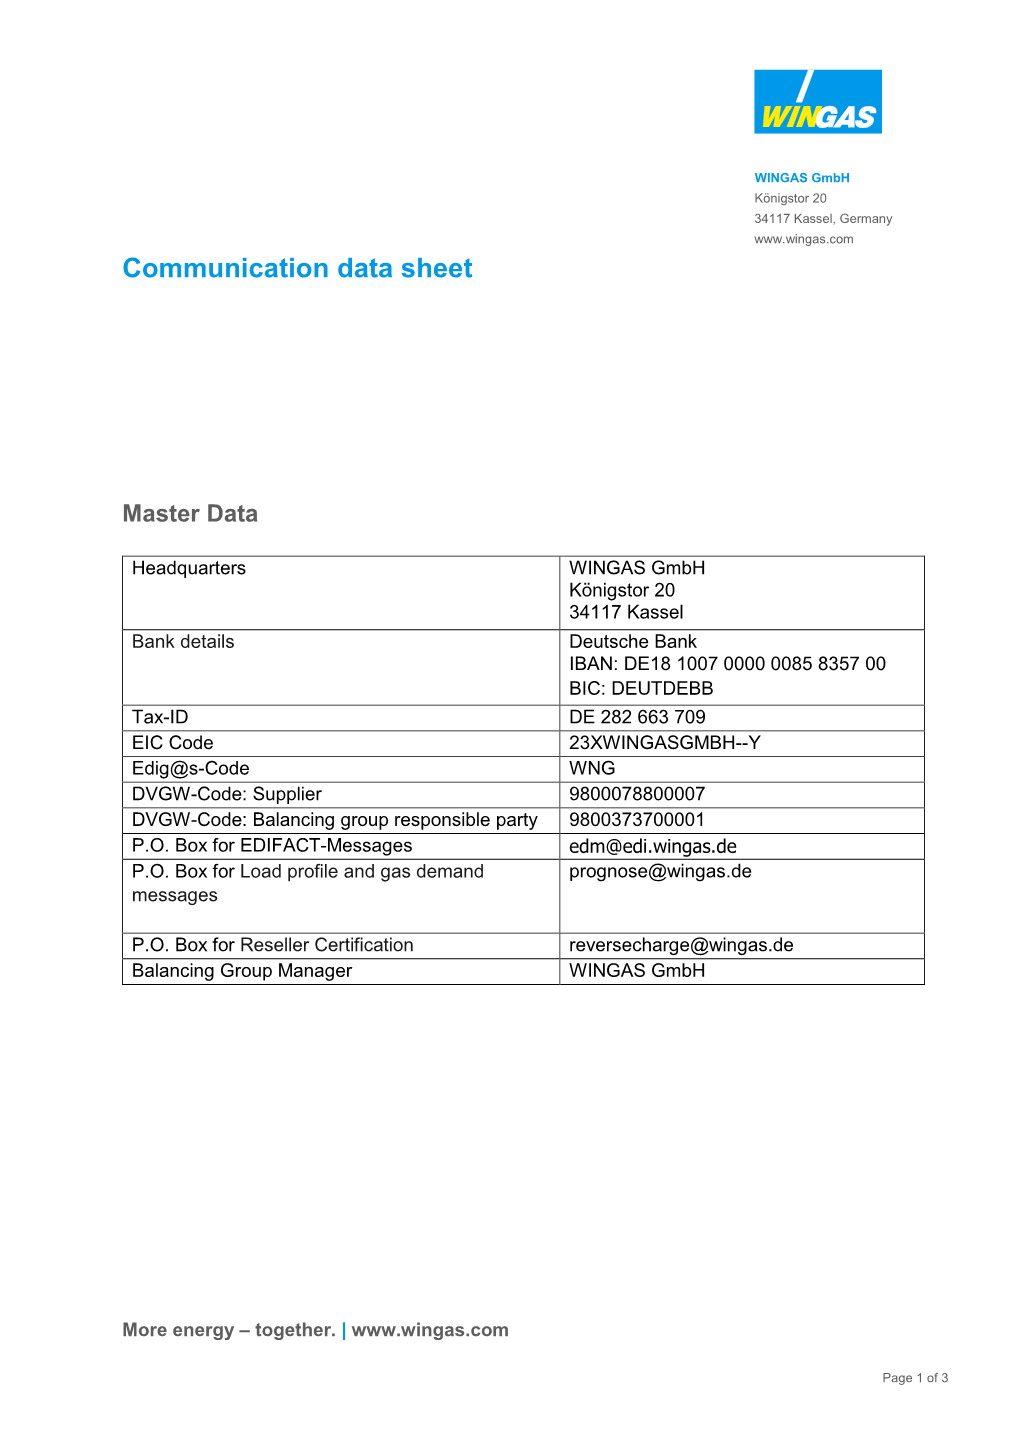 Communication Data Sheet